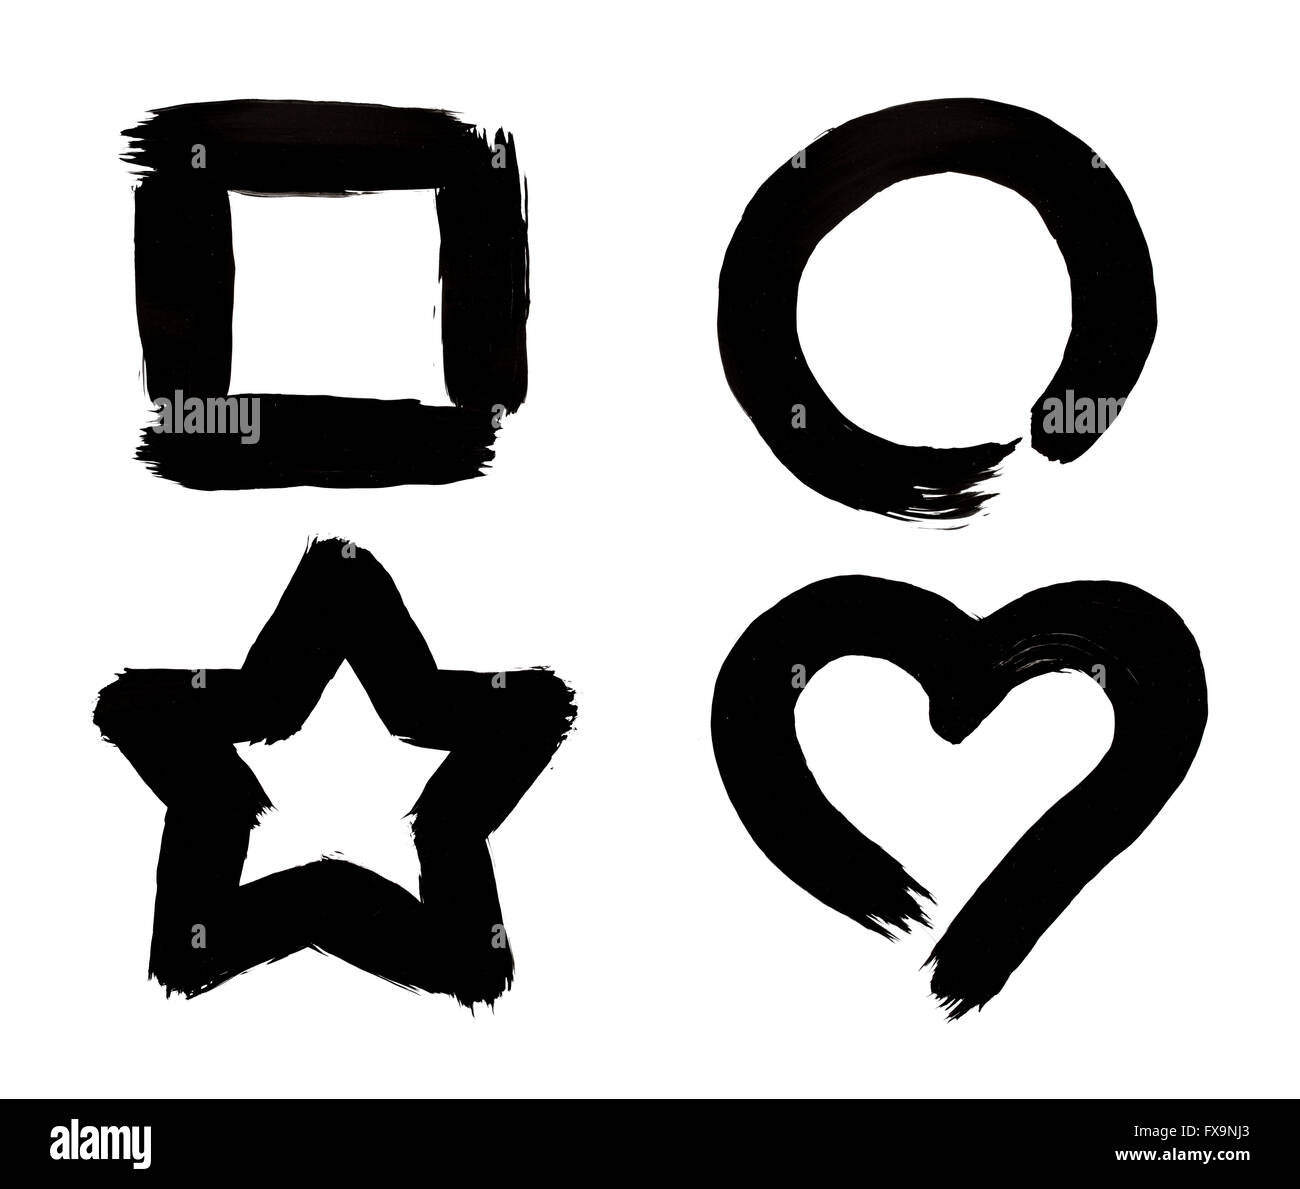 Carré, Cercle, étoile et symboles en coups de pinceau Peinture Noir isolé sur fond blanc. Banque D'Images